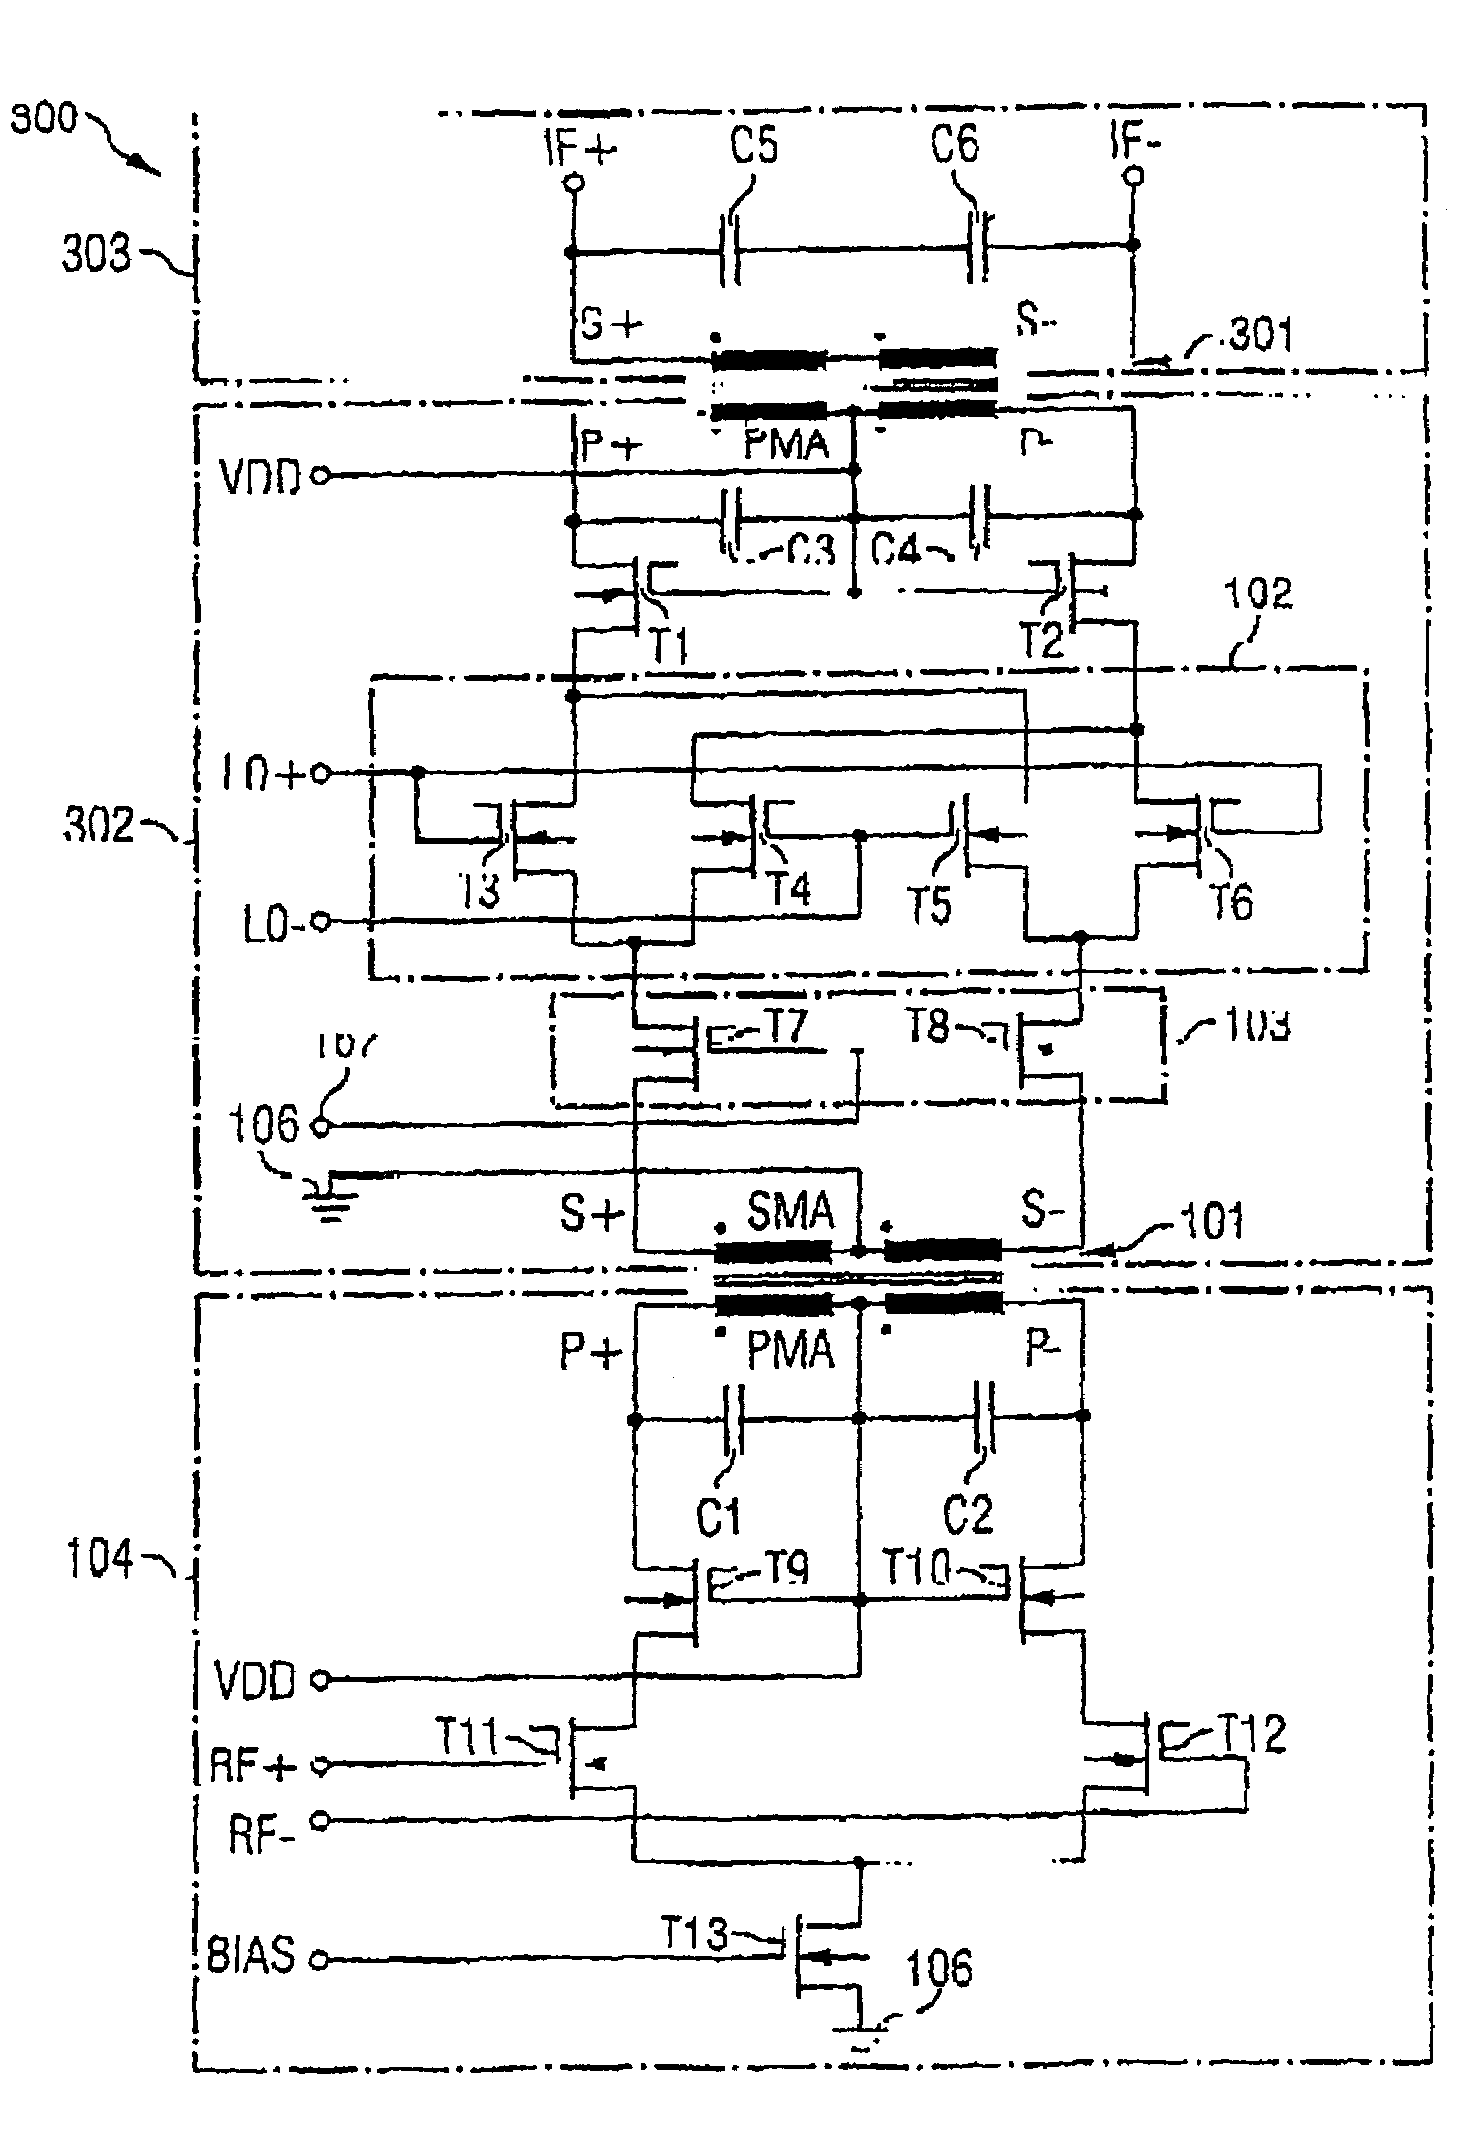 Integrated circuit having a mixer circuit